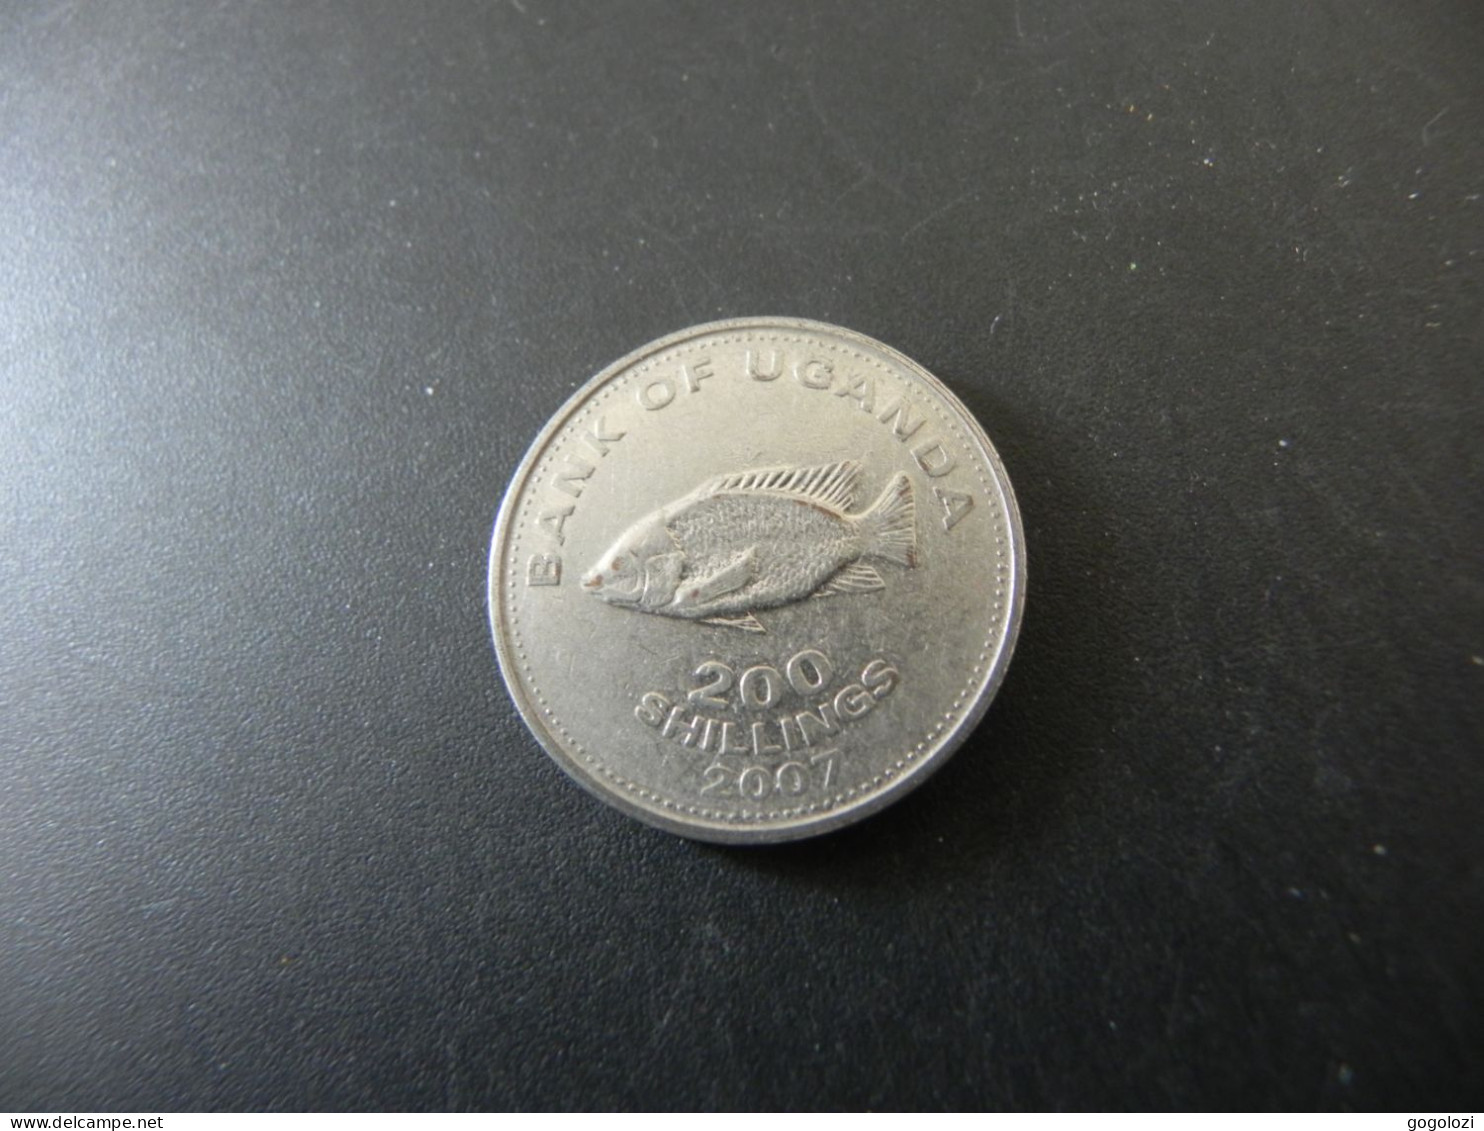 Uganda 200 Shillings 2007 - Uganda